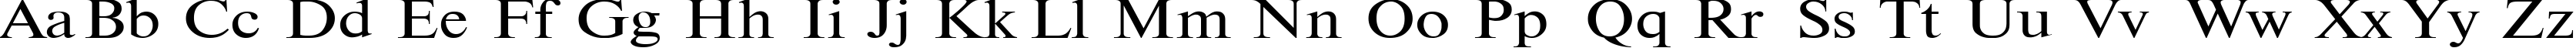 Пример написания английского алфавита шрифтом TimesET110